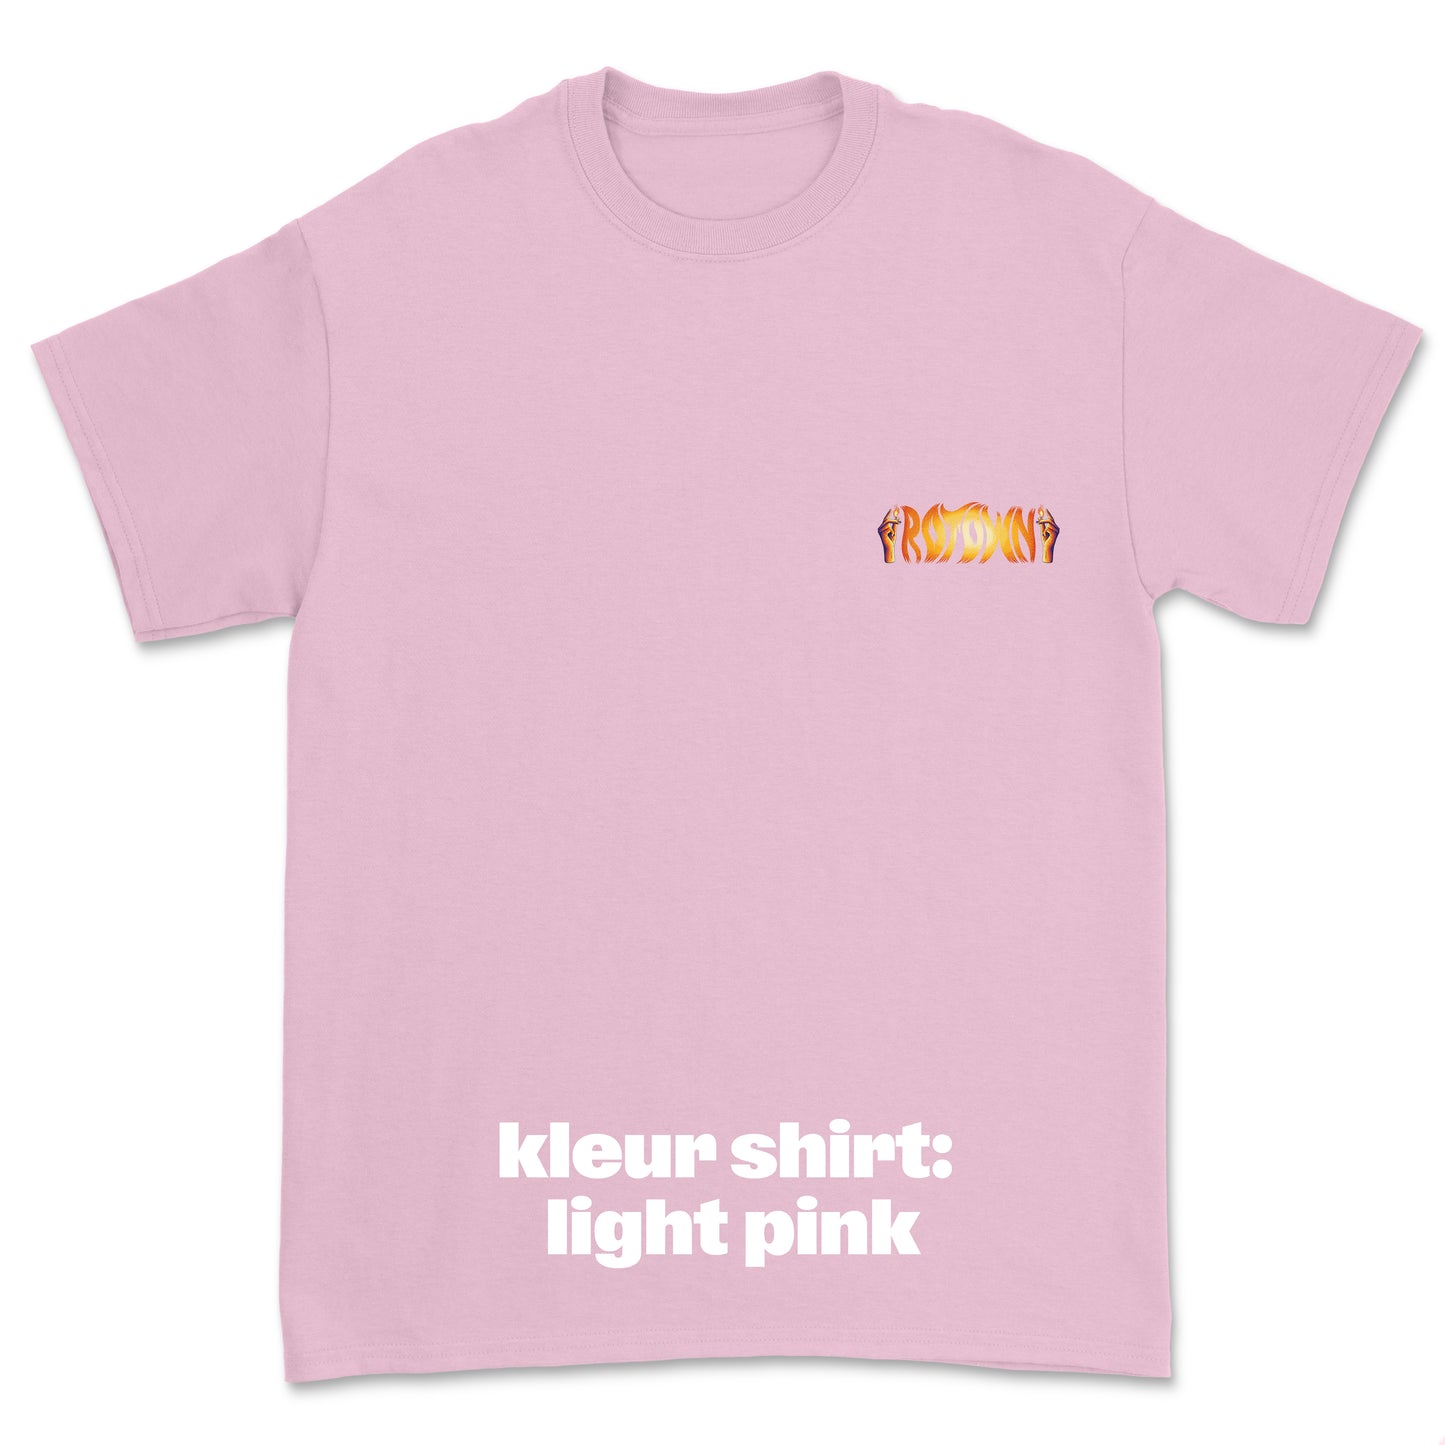 T-shirt 'Rotown Vuur' • klein oranje logo borst